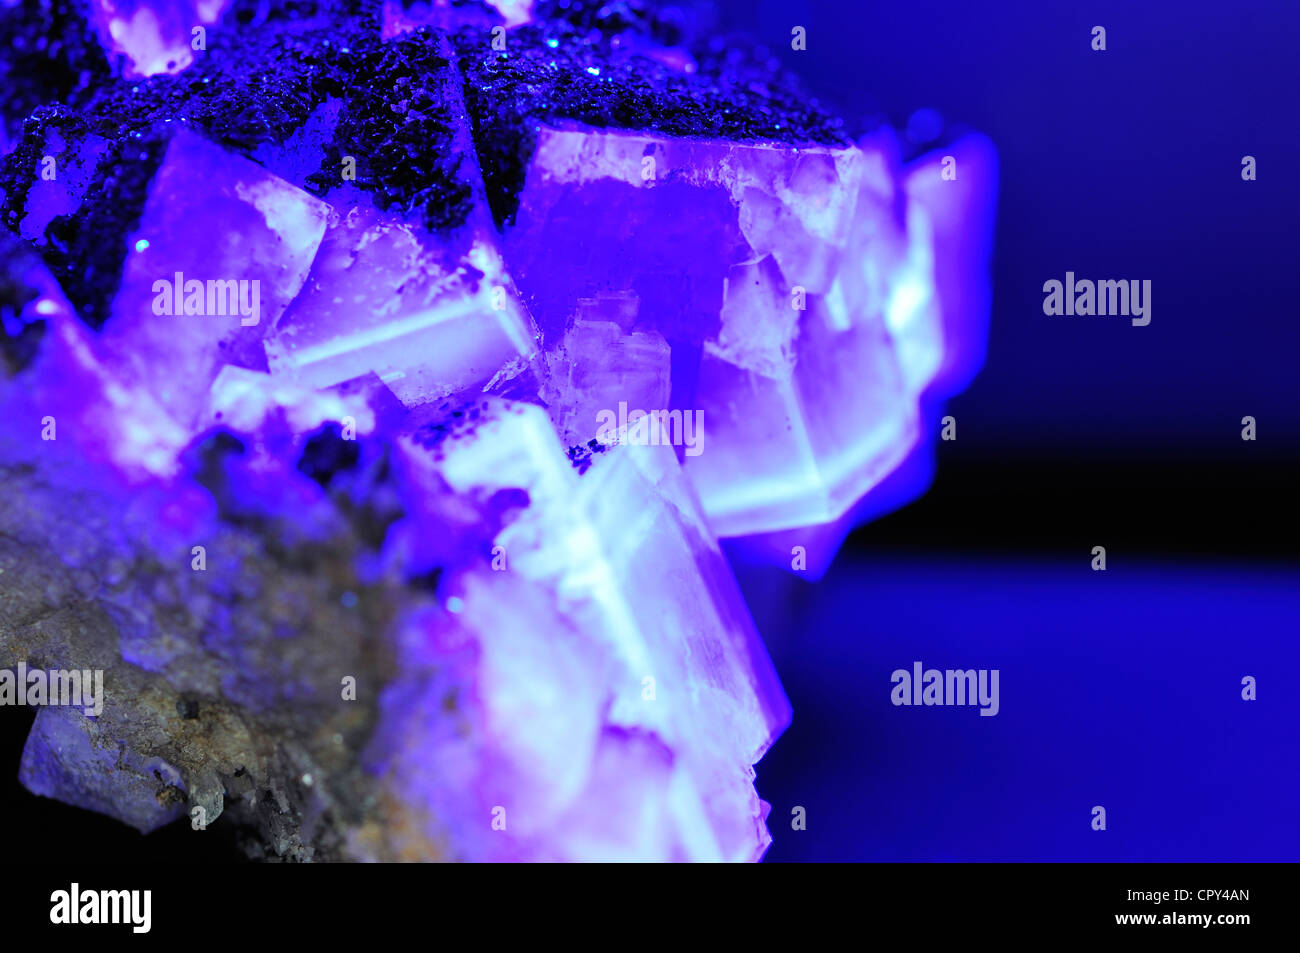 Cristaux de fluurite (fluorure de calcium) fluorescents sous la lumière ultraviolette Banque D'Images